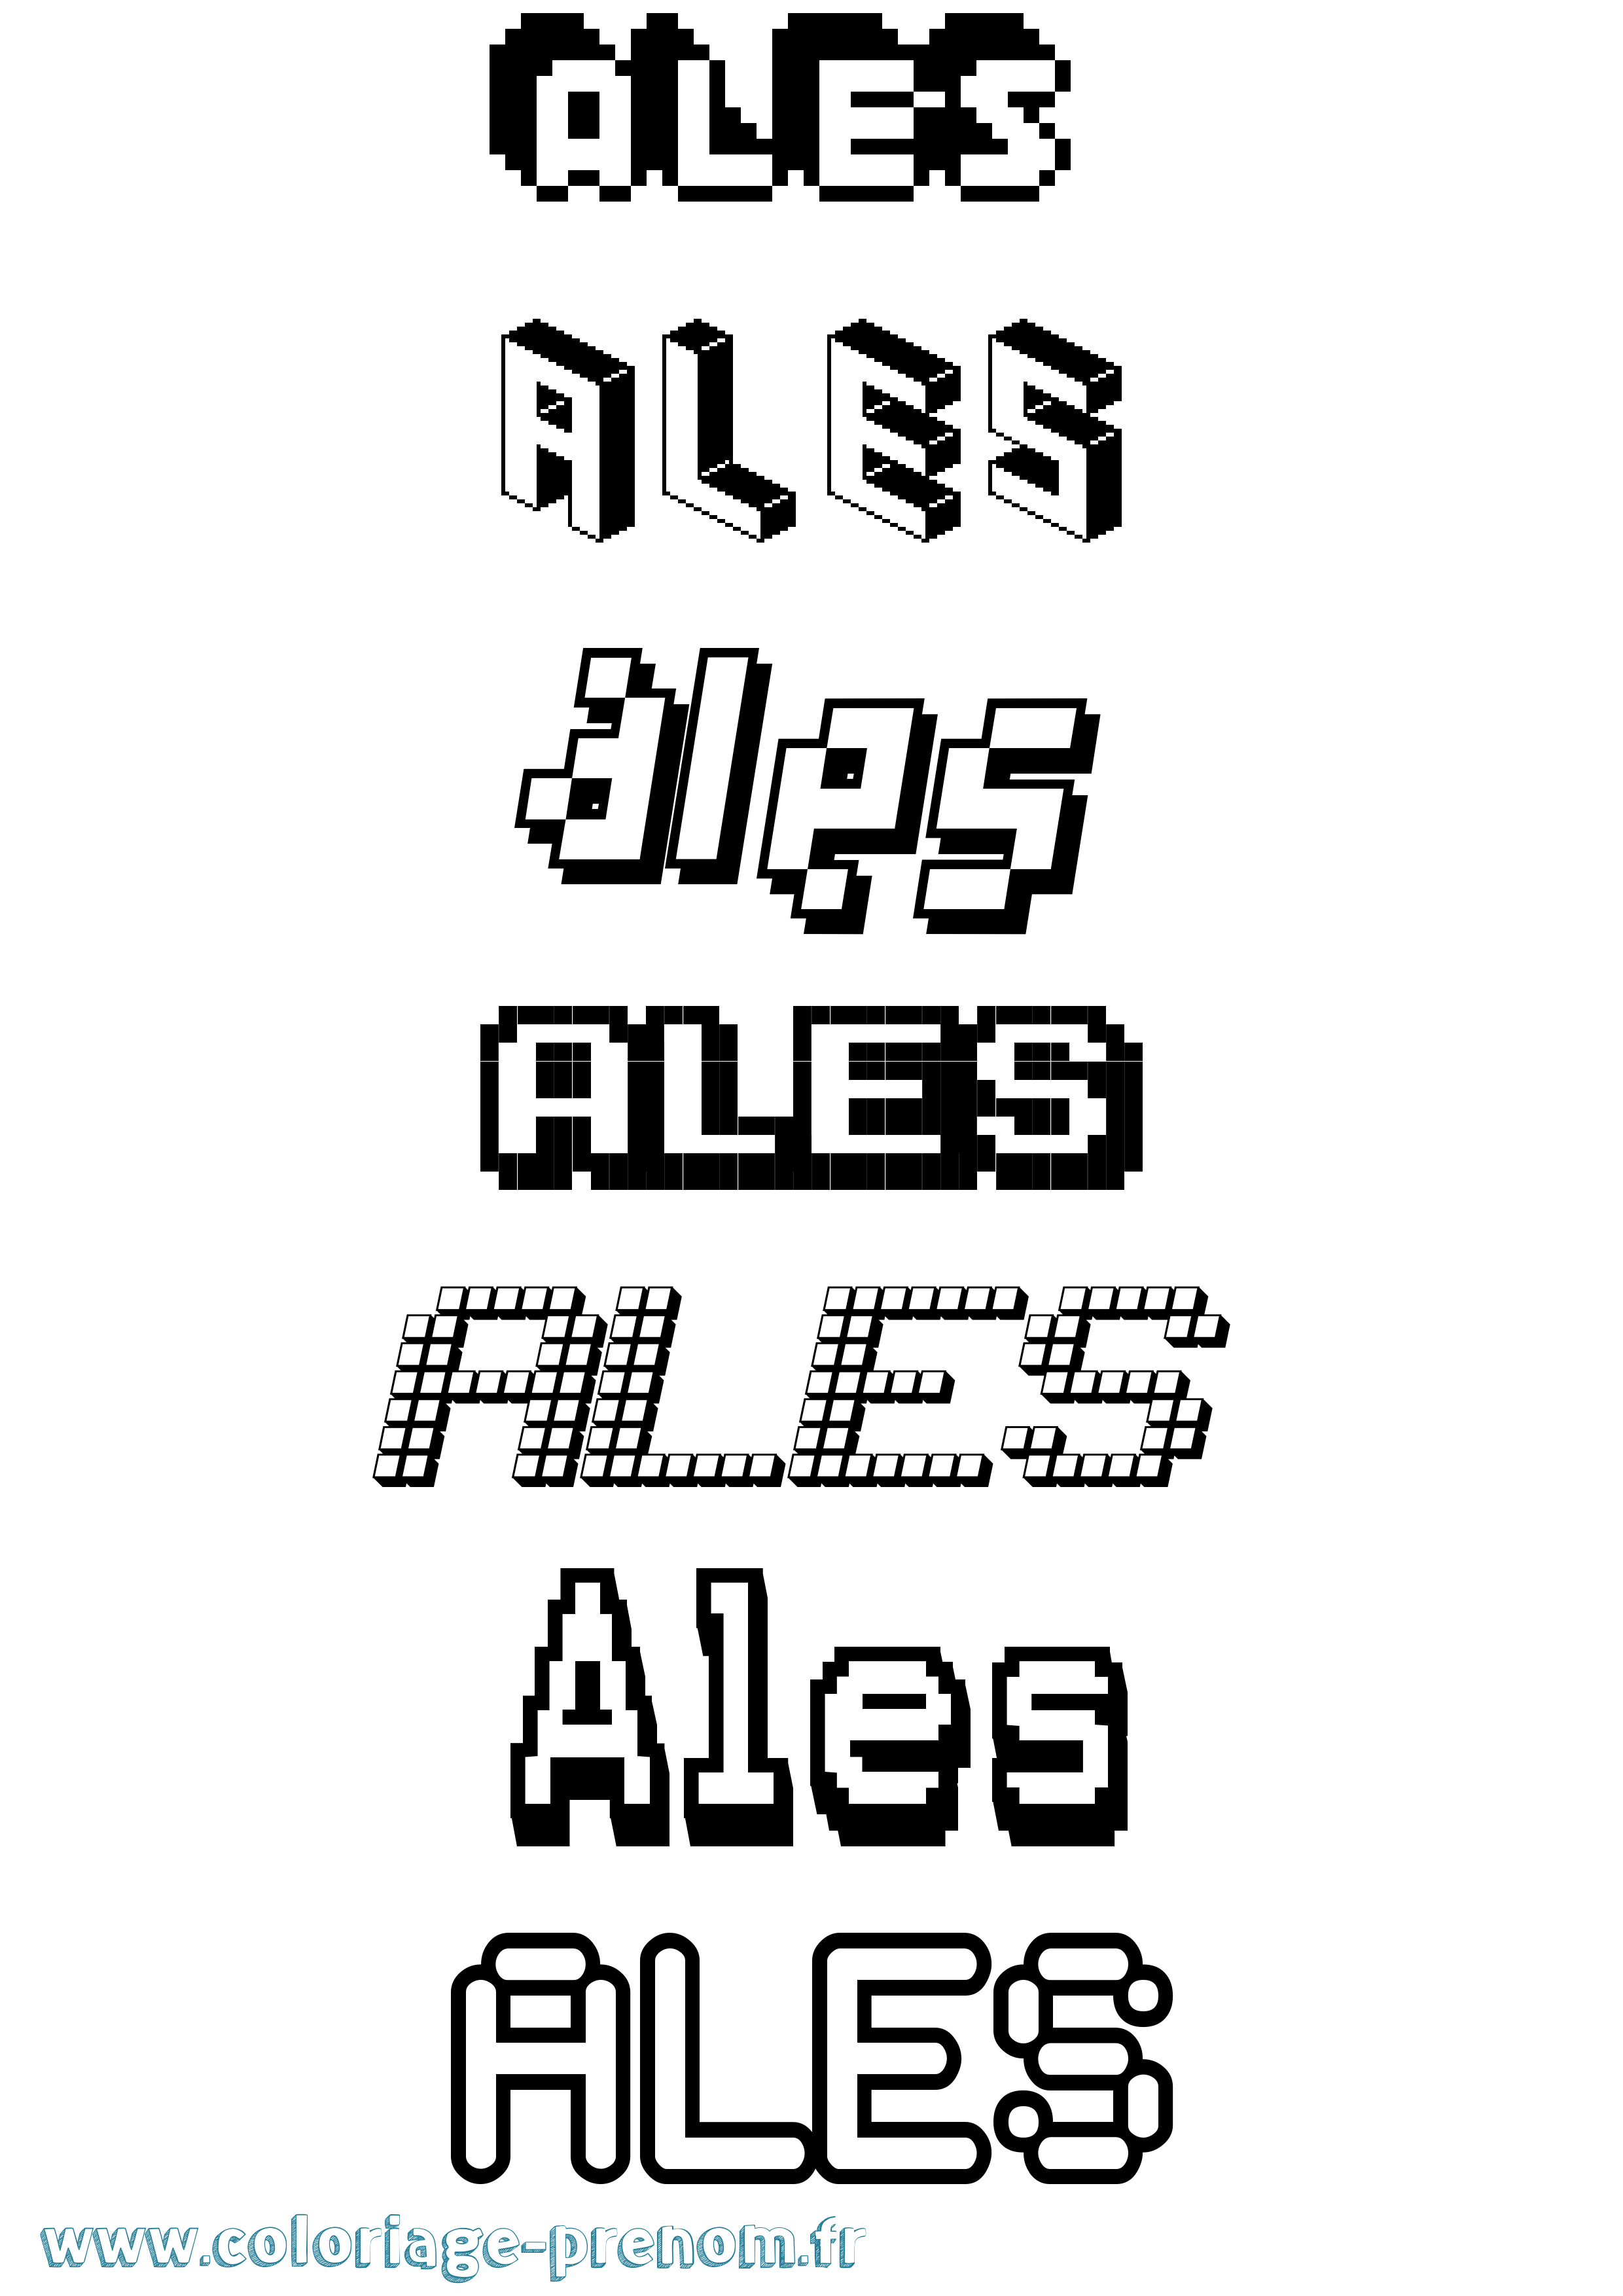 Coloriage prénom Ales Pixel